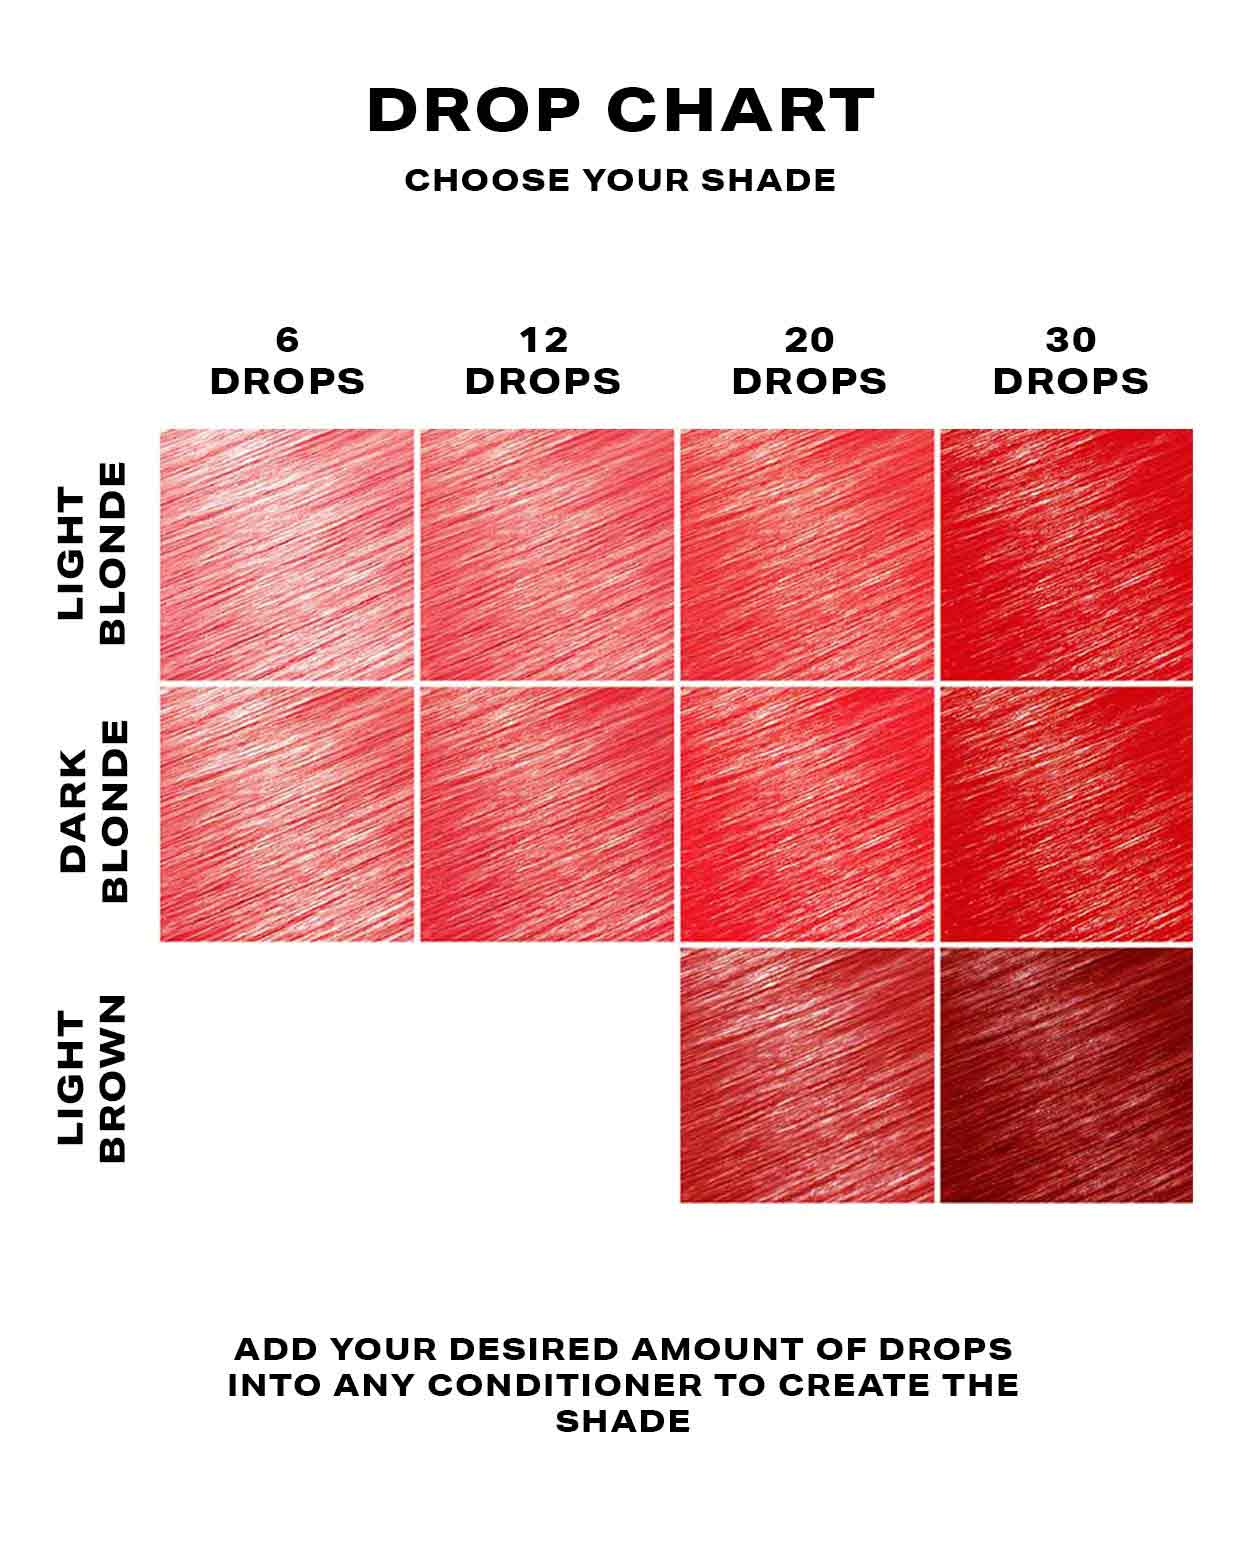 Red hair dye DROP IT chart